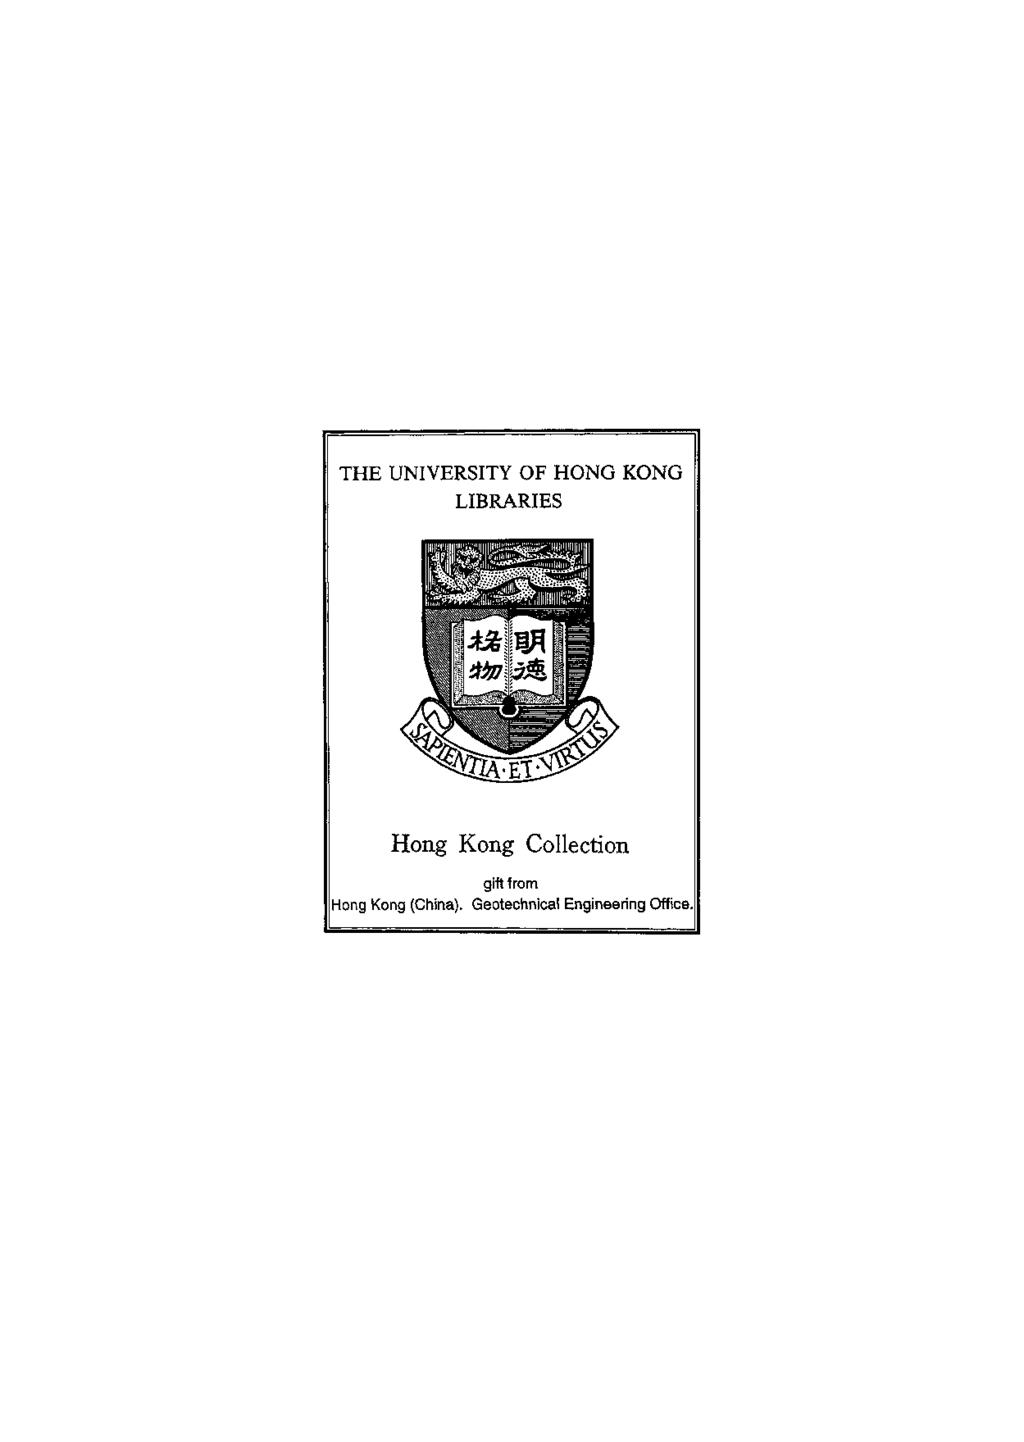 THE UNIVERSITY OF HONG KONG LIBRARIES Hong Kong Collection